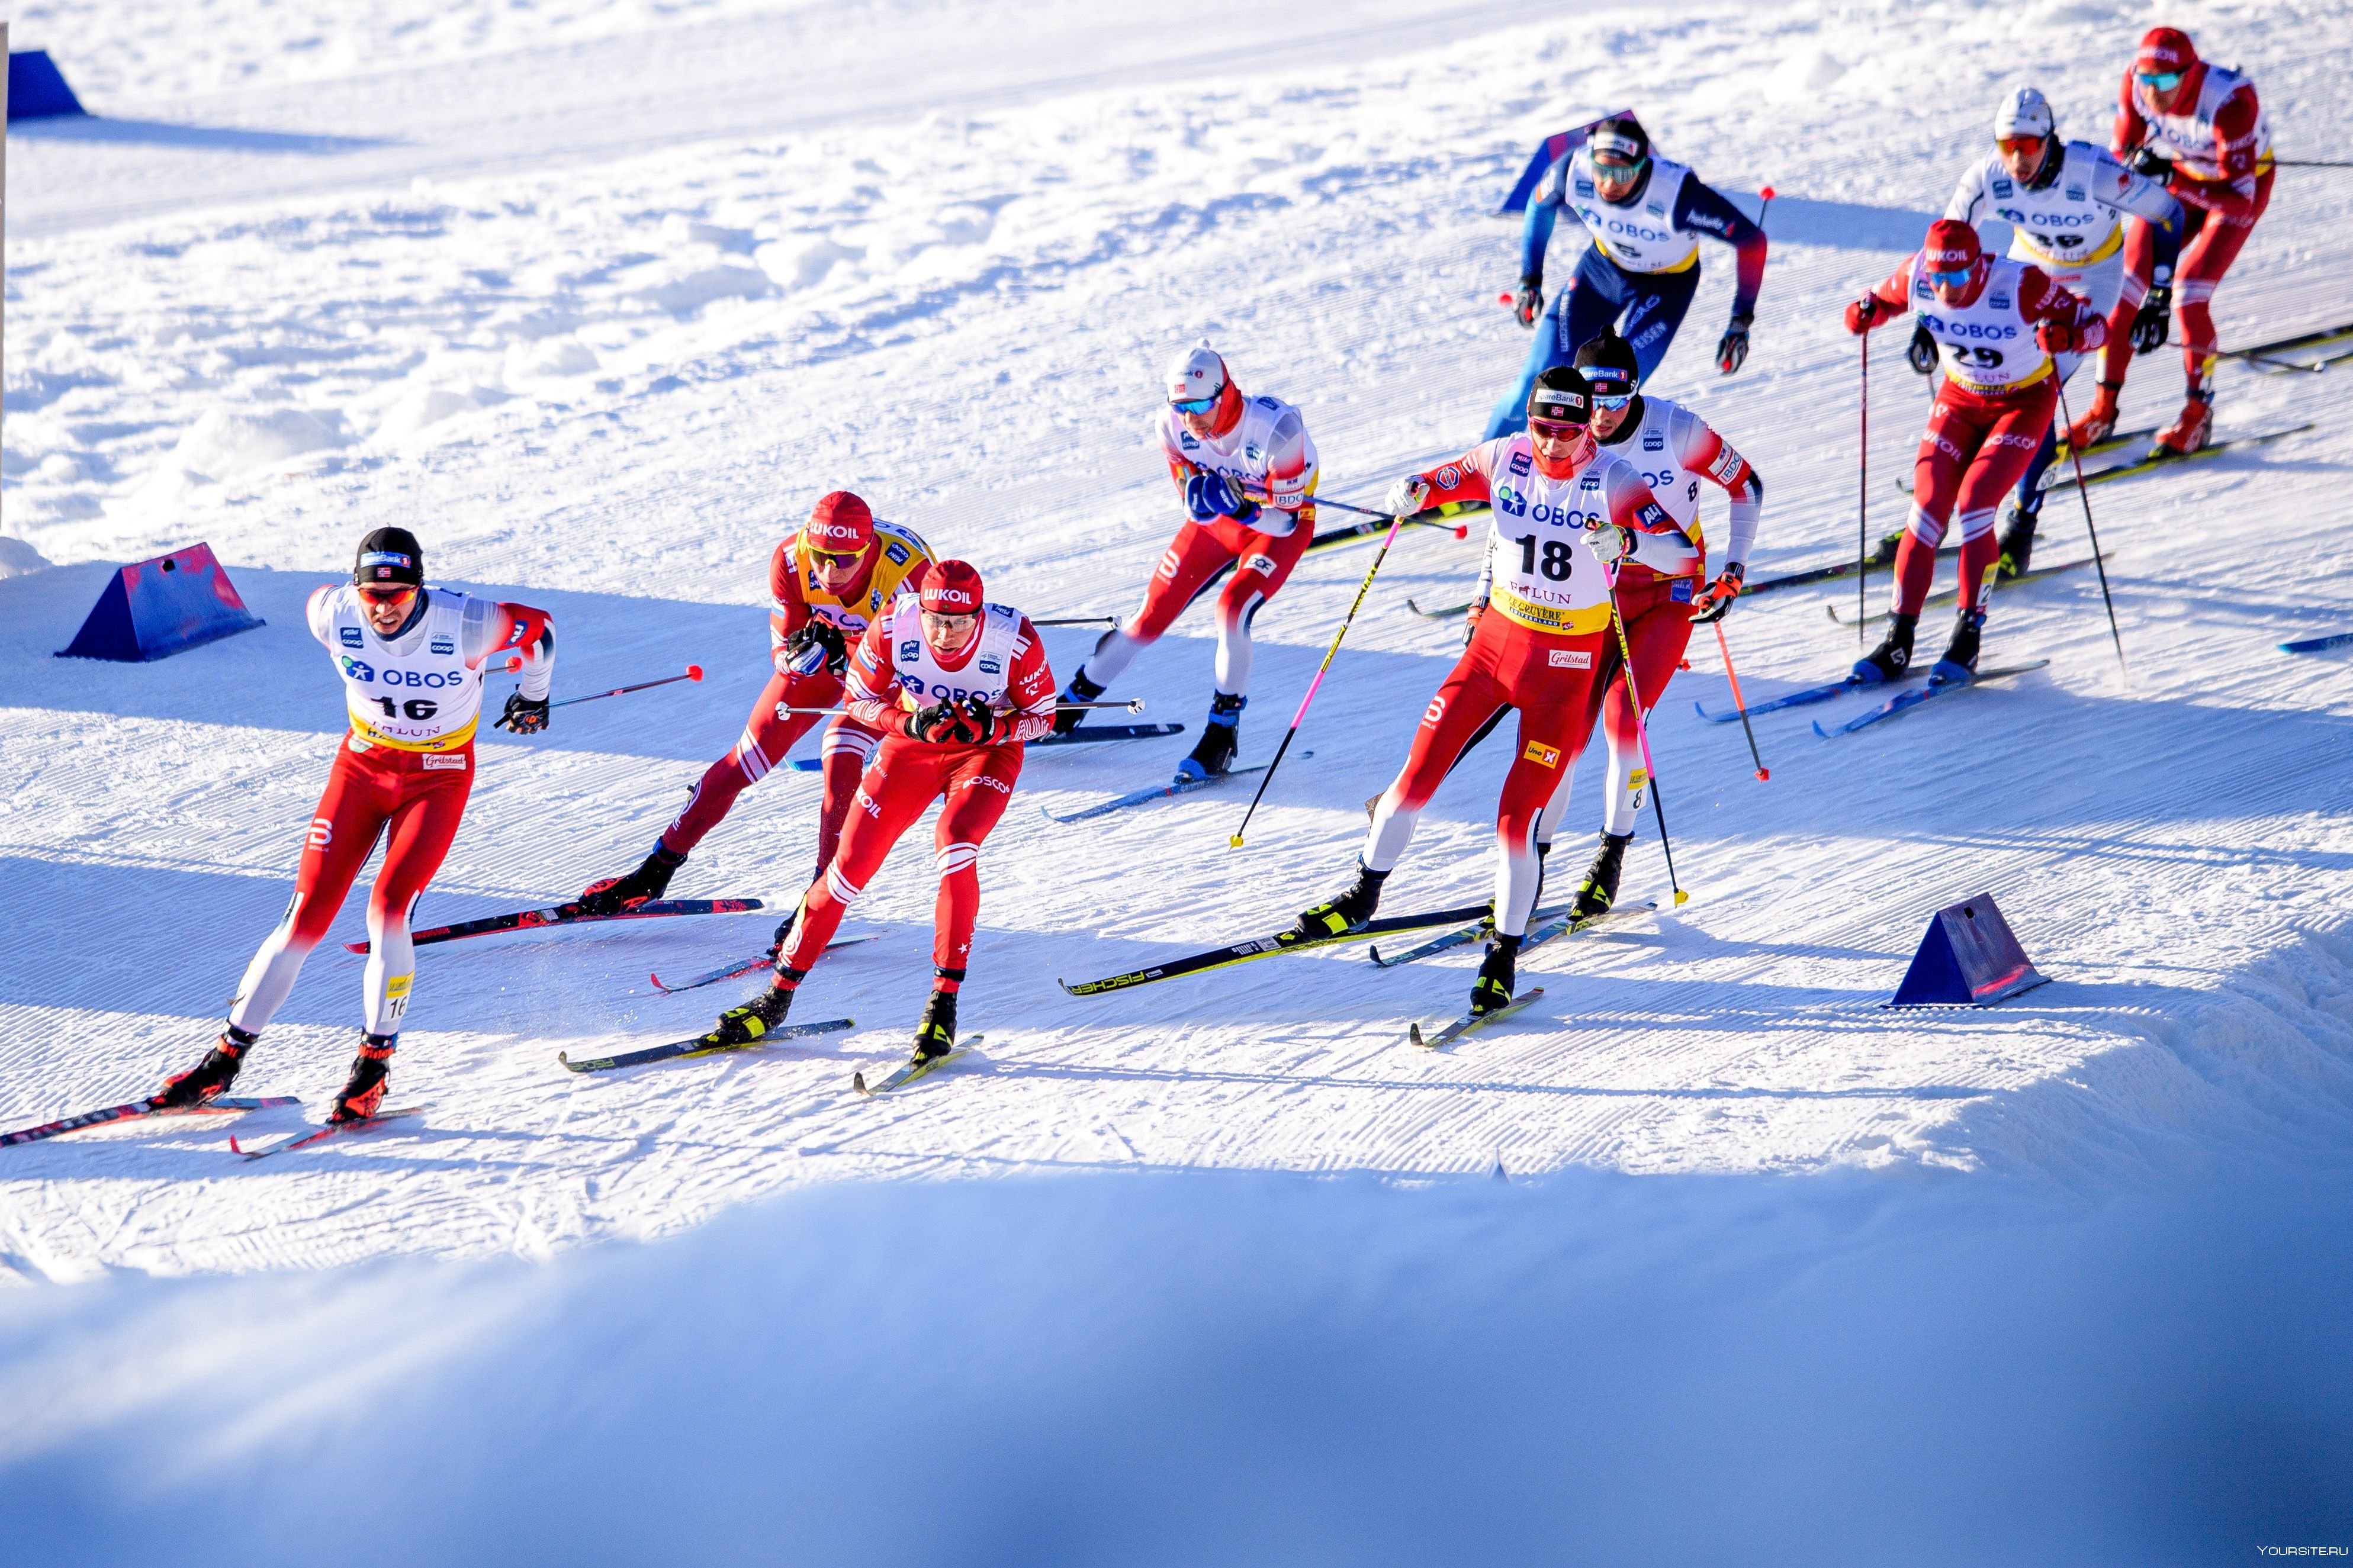 Впереди нас ехали спортсмены лыжники вовремя. Лыжные гонки ОИ 2022. Лыжные гонки Пекин 2022. Лыжные гонки на зимних Олимпийских играх 2022. Холунд лыжник.